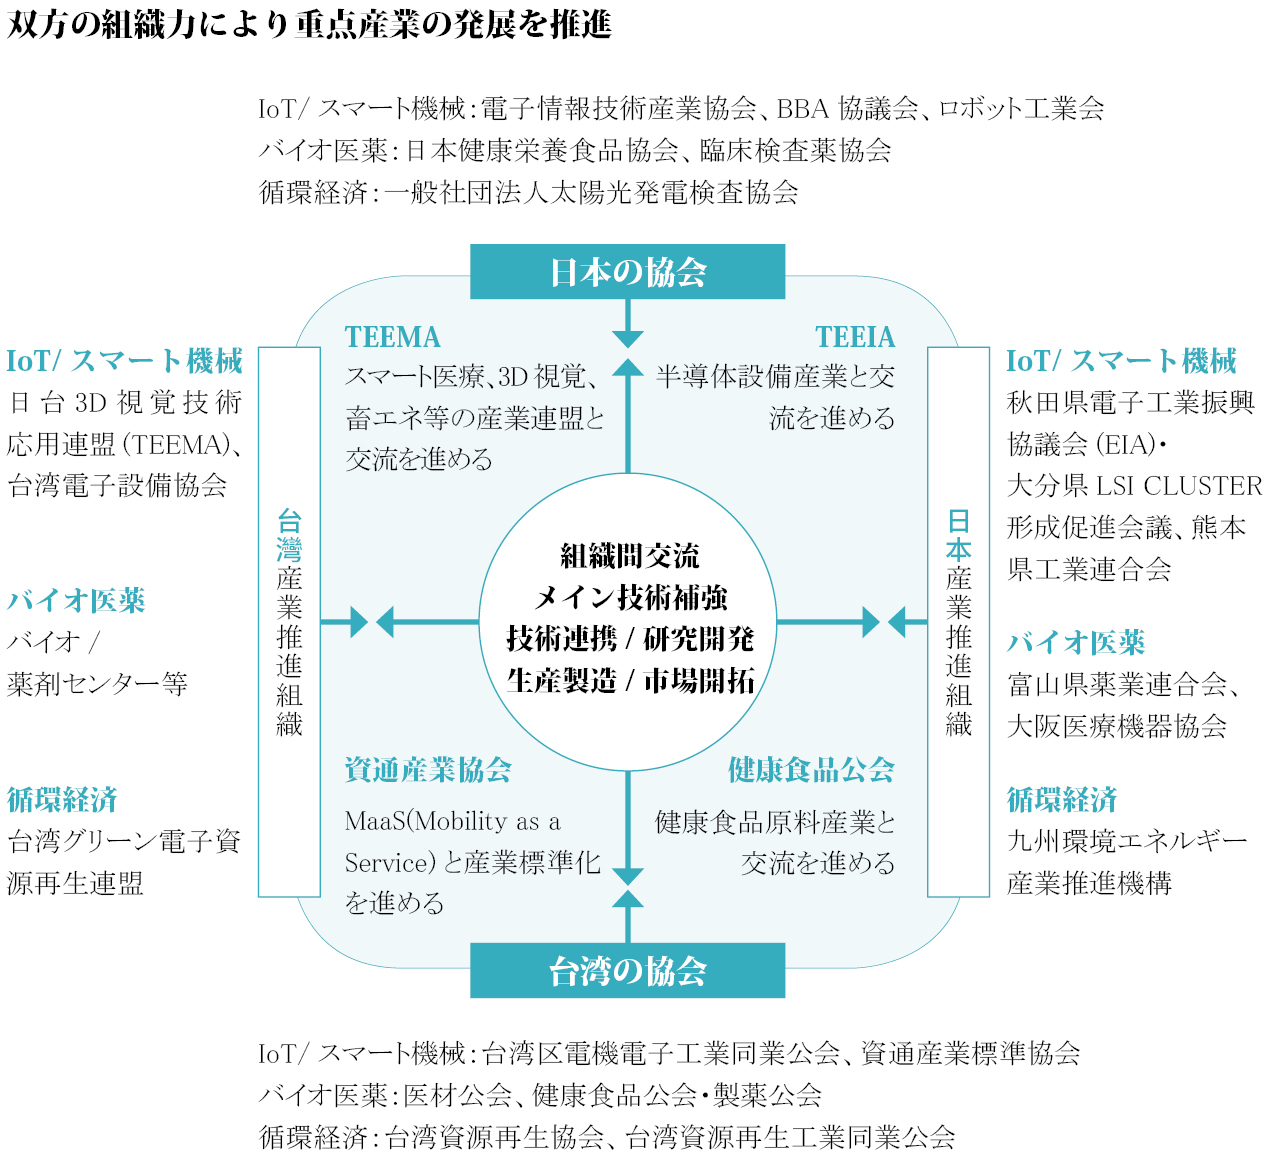 【双方の組織力により重点産業の発展を推進】
台湾・日本商工会を主軸として、台湾と日本企業の相互訪問の仕組みを確立し、台湾の産業チェーンが日本市場に参入できるようにします。 Parallelは、既存の協力関係に基づいており、組織間アプローチを使用して、中国企業が日本の業界または組織の代表企業との交流と協力を拡大し、中国の産業競争力を強化するのを支援します。

＊台湾の協会
-IoT/ スマート機械：台湾区電機電子工業同業公会、資通産業標準協会
-バイオ医薬：医材公会、健康食品公会・製薬公会
-循環経済：台湾資源再生協会、台湾資源再生工業同業公会

＊日本の協会
-IoT/ スマート機械：電子情報技術産業協会、BBA 協議会、ロボット工業会
-バイオ医薬：日本健康栄養食品協会、臨床検査薬協会
-循環経済：一般社団法人太陽光発電検査協会

＊台灣産業推進組織
-IoT/スマート機械：日台3D視覚技術、応用連盟(TEEMA)、台湾電子設備協会
-バイオ医薬：バイオ/薬剤センター等
-循環経済：台湾グリーン電子資源再生連盟

＊日本産業推進組織
-IoT/ スマート機械：秋田県電子工業振興協議会(EIA)、大分県LSI CLUSTER形成促進会議、熊本県工業連合会
-バイオ医薬：富山県薬業連合会、大阪医療機器協会
-循環経済：九州環境エネルギー産業推進機構
